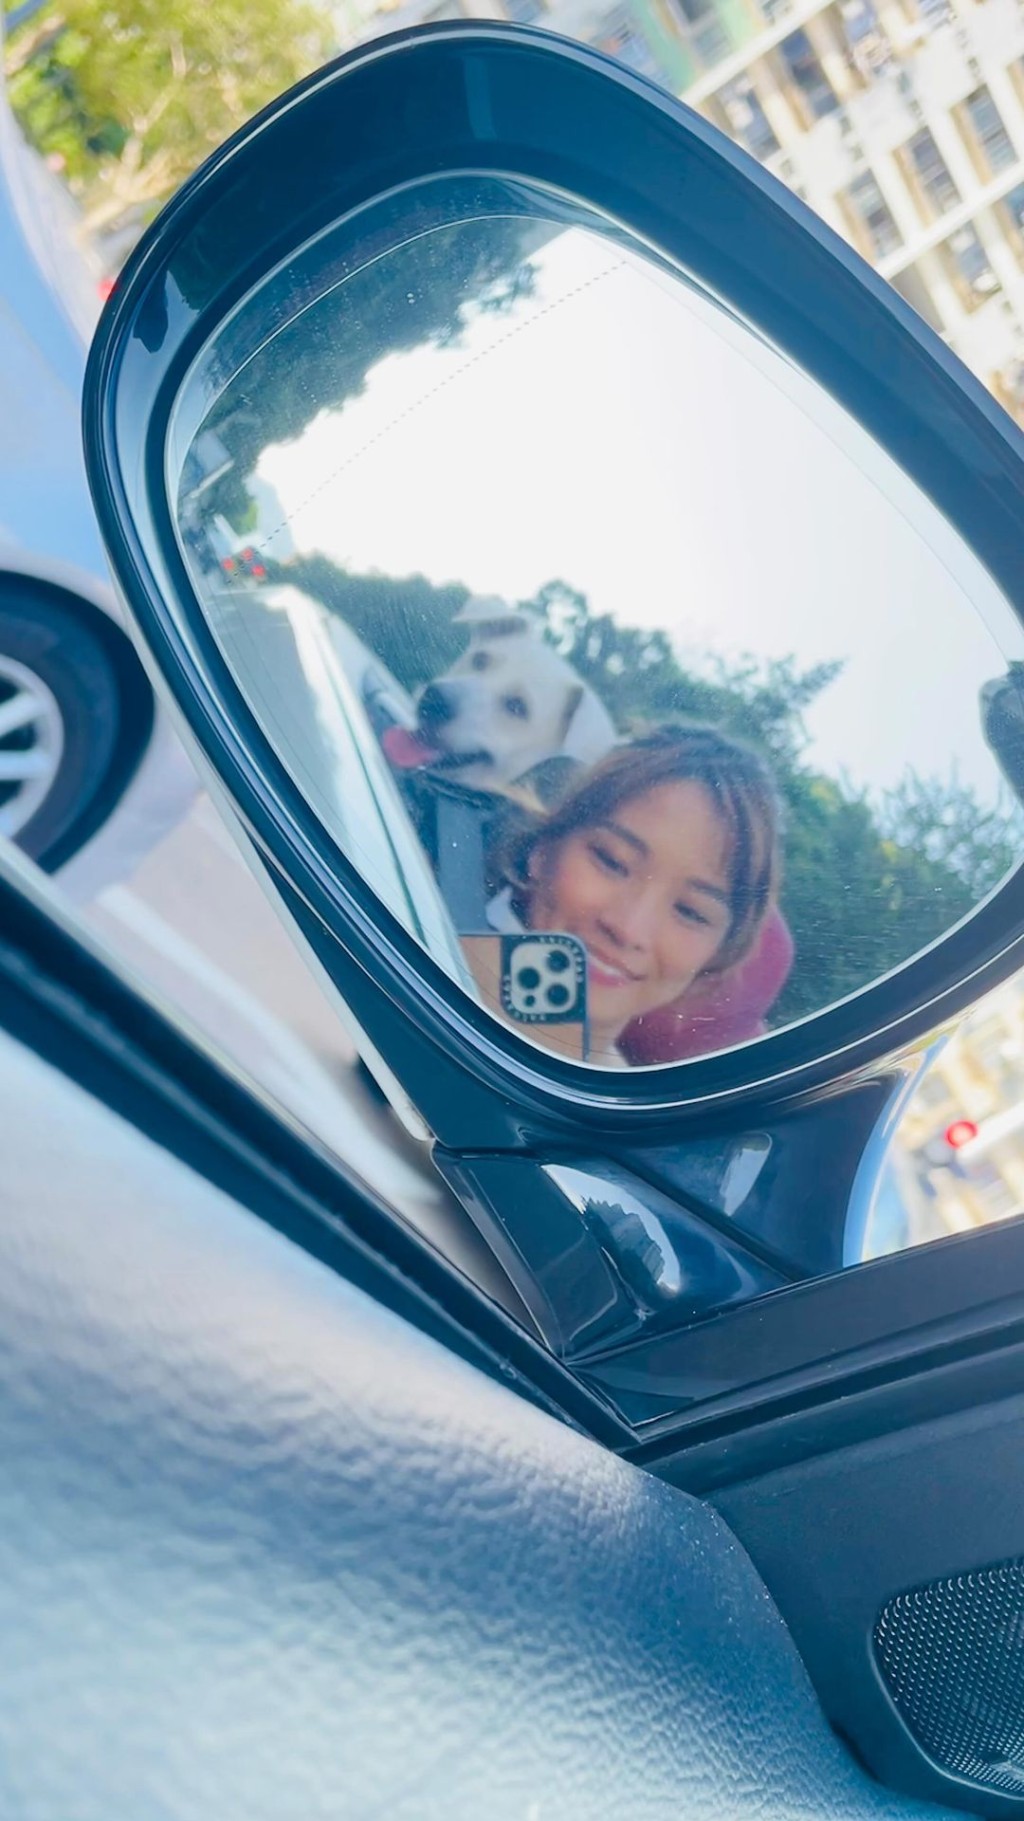 李晓欣日前上载与爱犬兜风的照片。